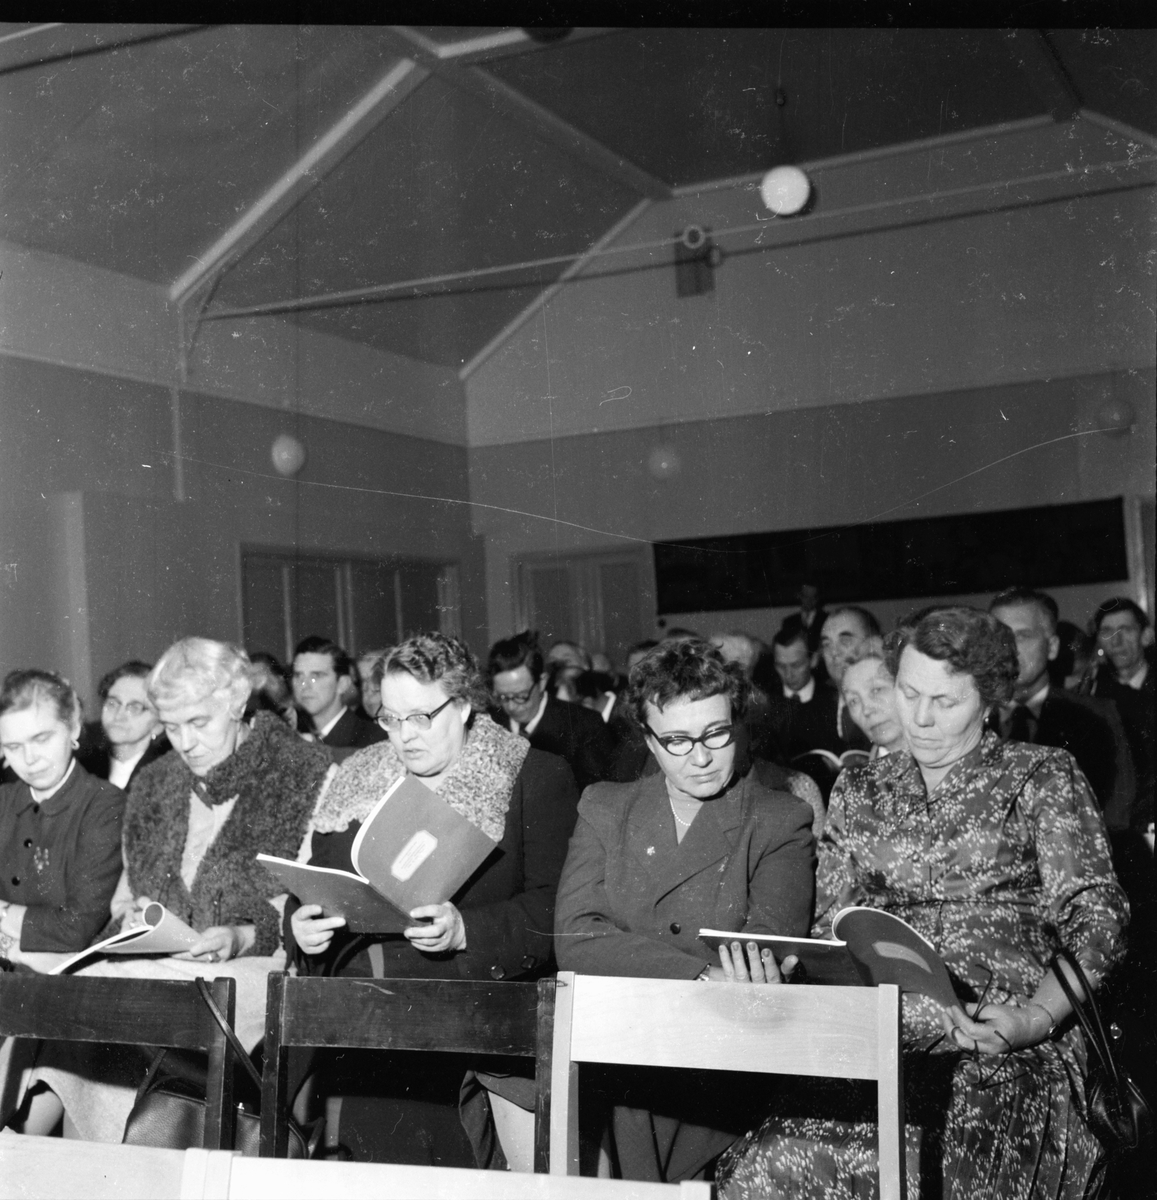 Hushållningssällskapets årsmöte i Bollnäs.
4/12 1957